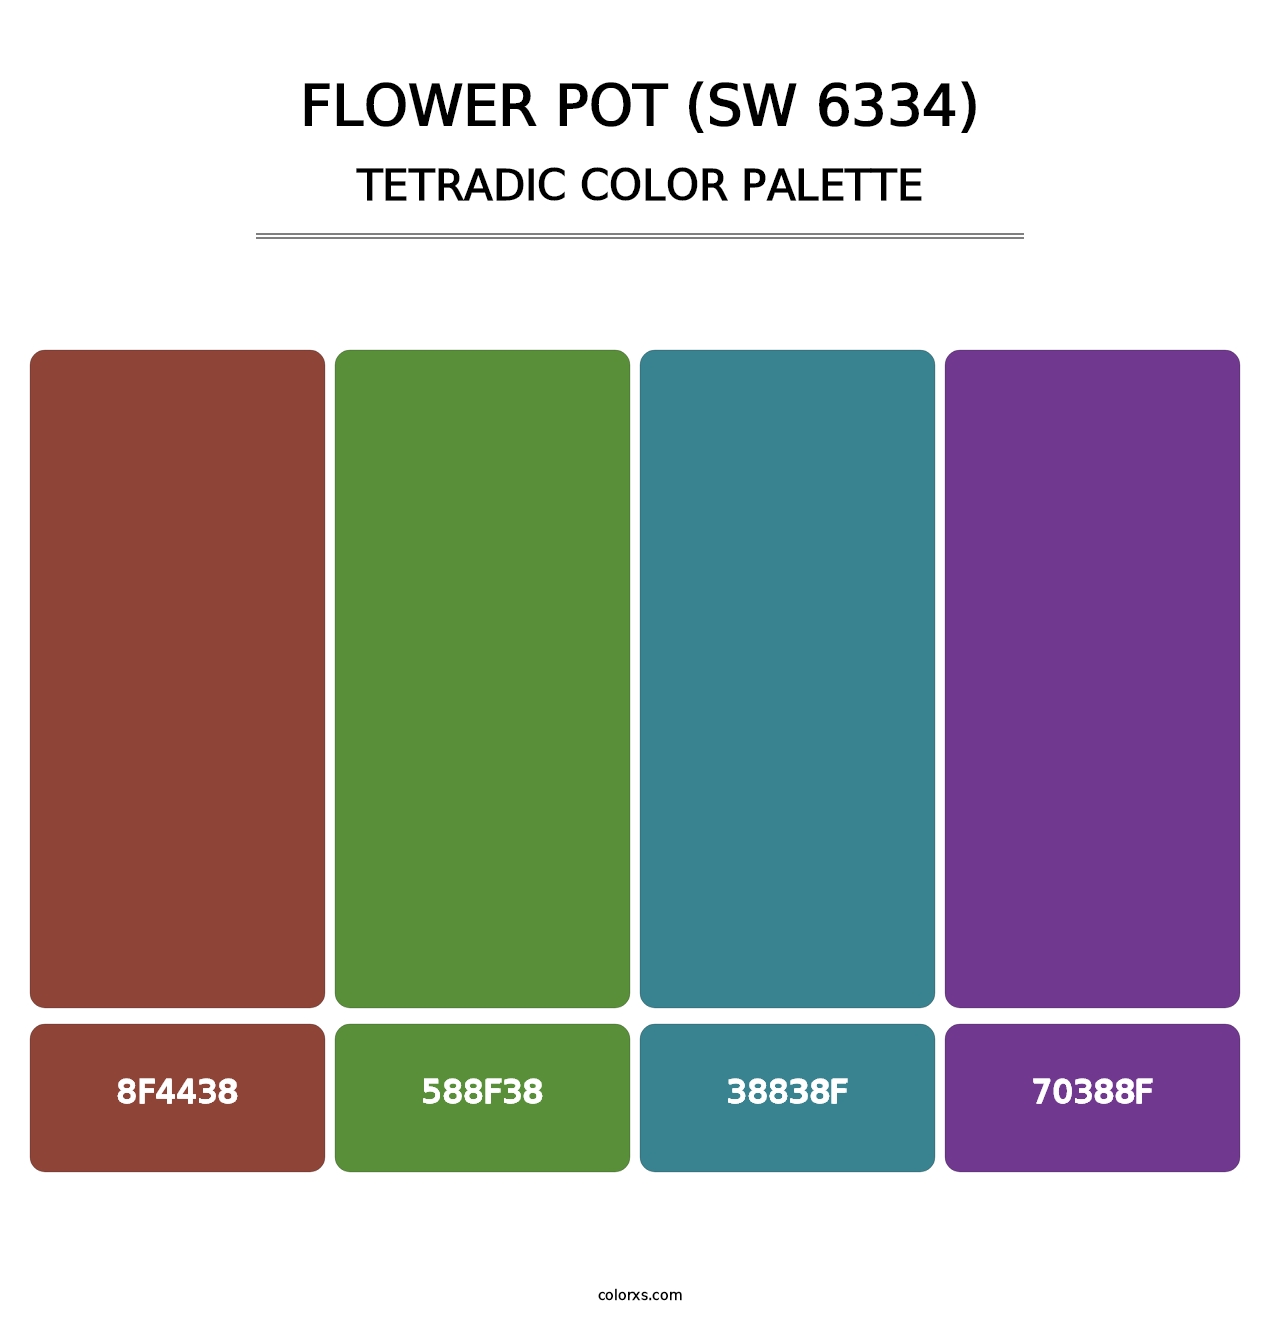 Flower Pot (SW 6334) - Tetradic Color Palette